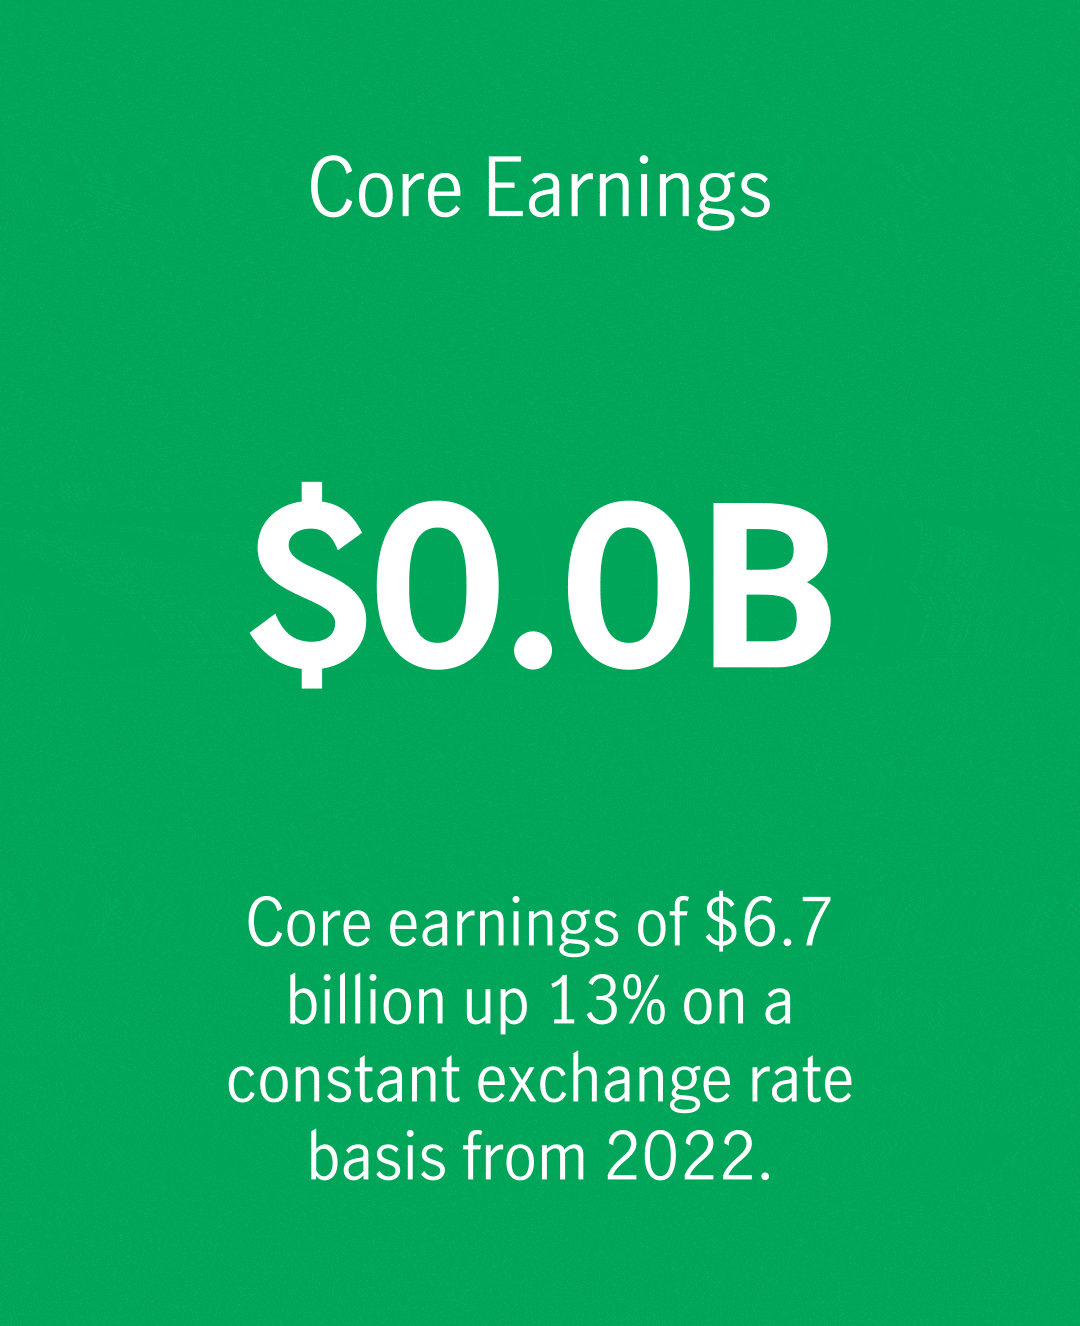 Core earnings of $6.7B